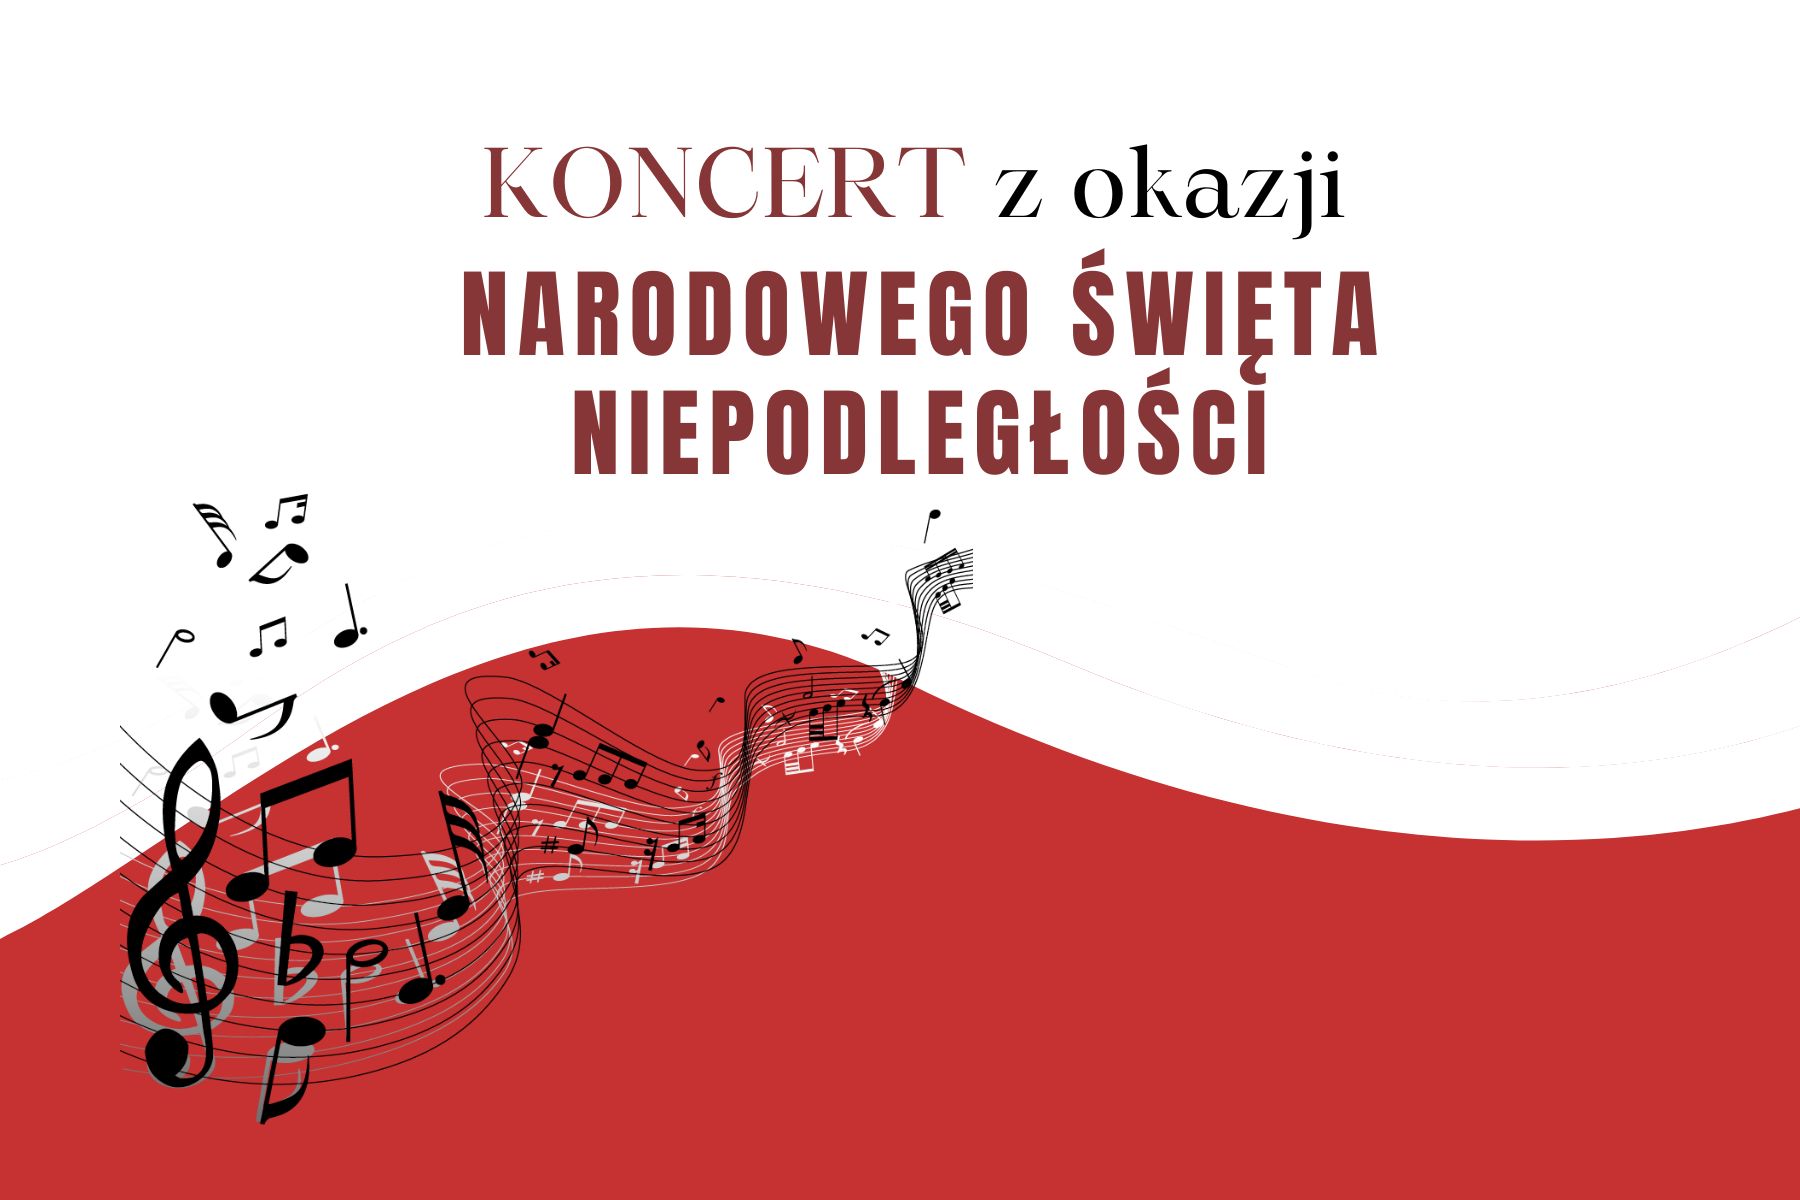 Grafika przedstawia na biało-czerwonym tle napis: Koncert z okazji Narodowego Święta Niepodległości oraz grafikę w postaci nut na pięciolinii